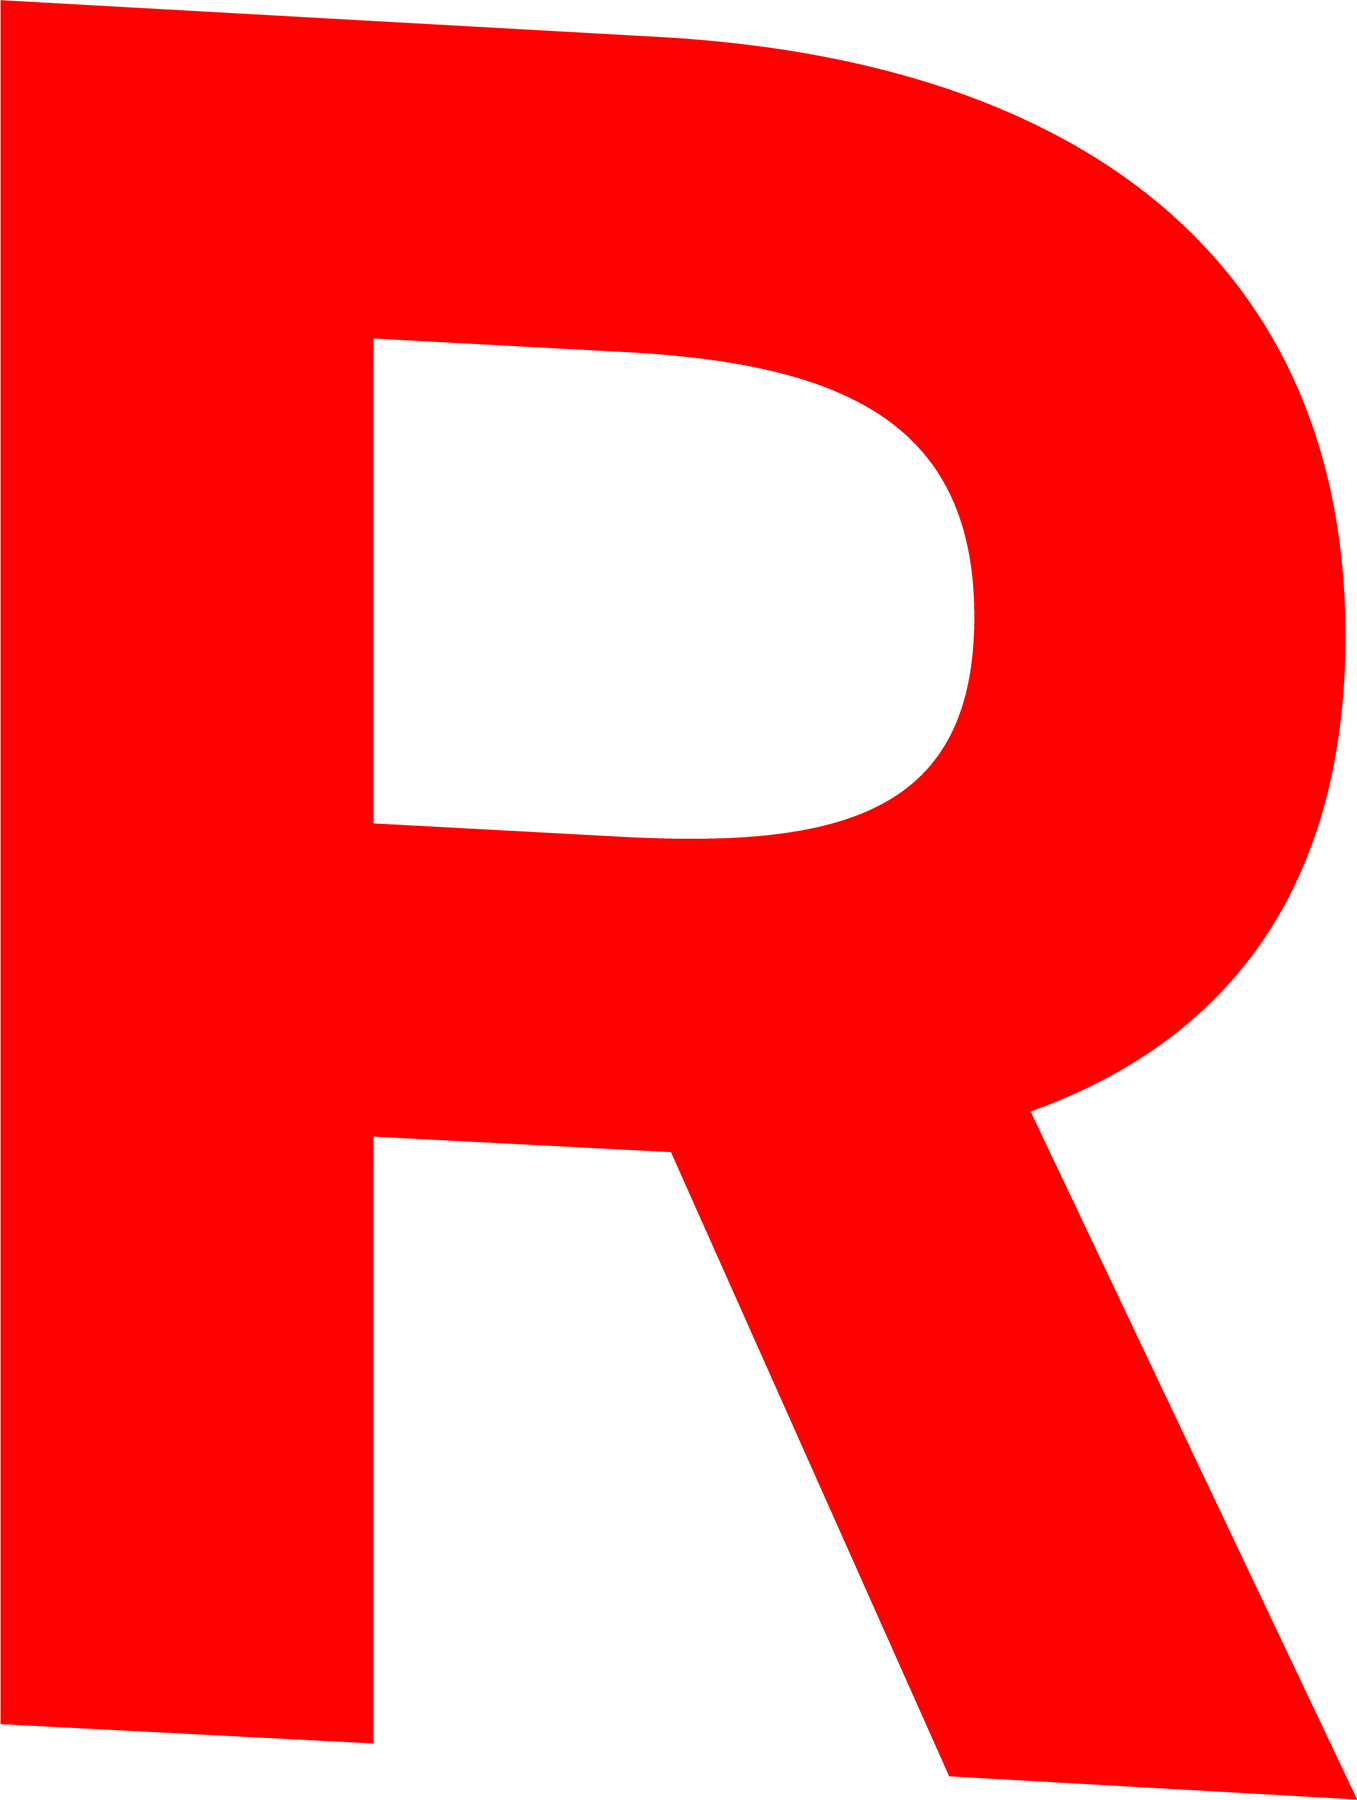 Big Red R in Circle Logo - R Street